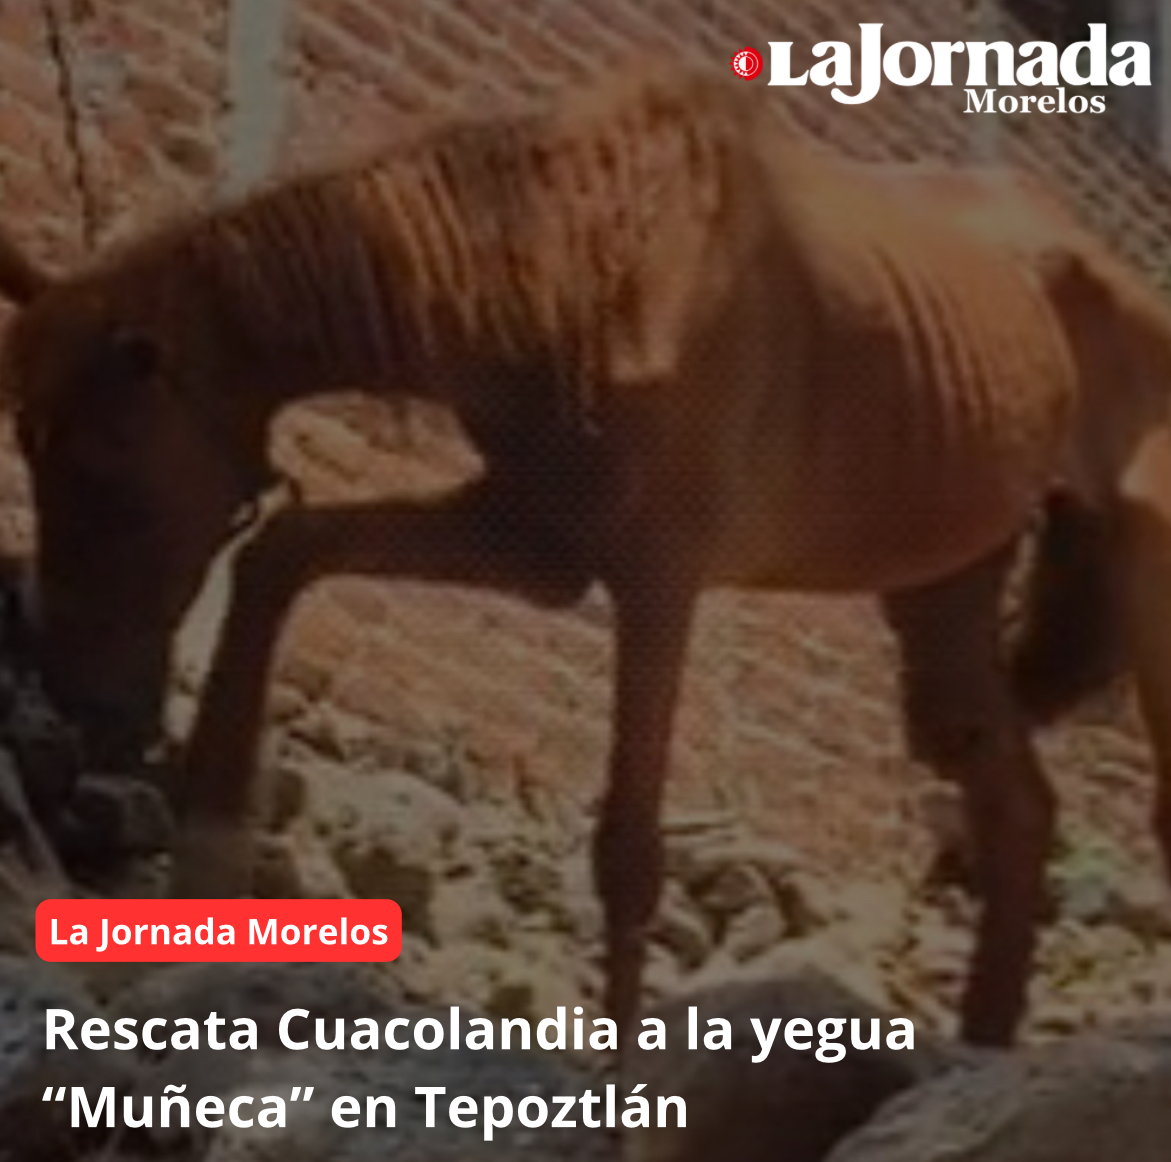 Rescata Cuacolandia a la yegua “Muñeca” en Tepoztlán